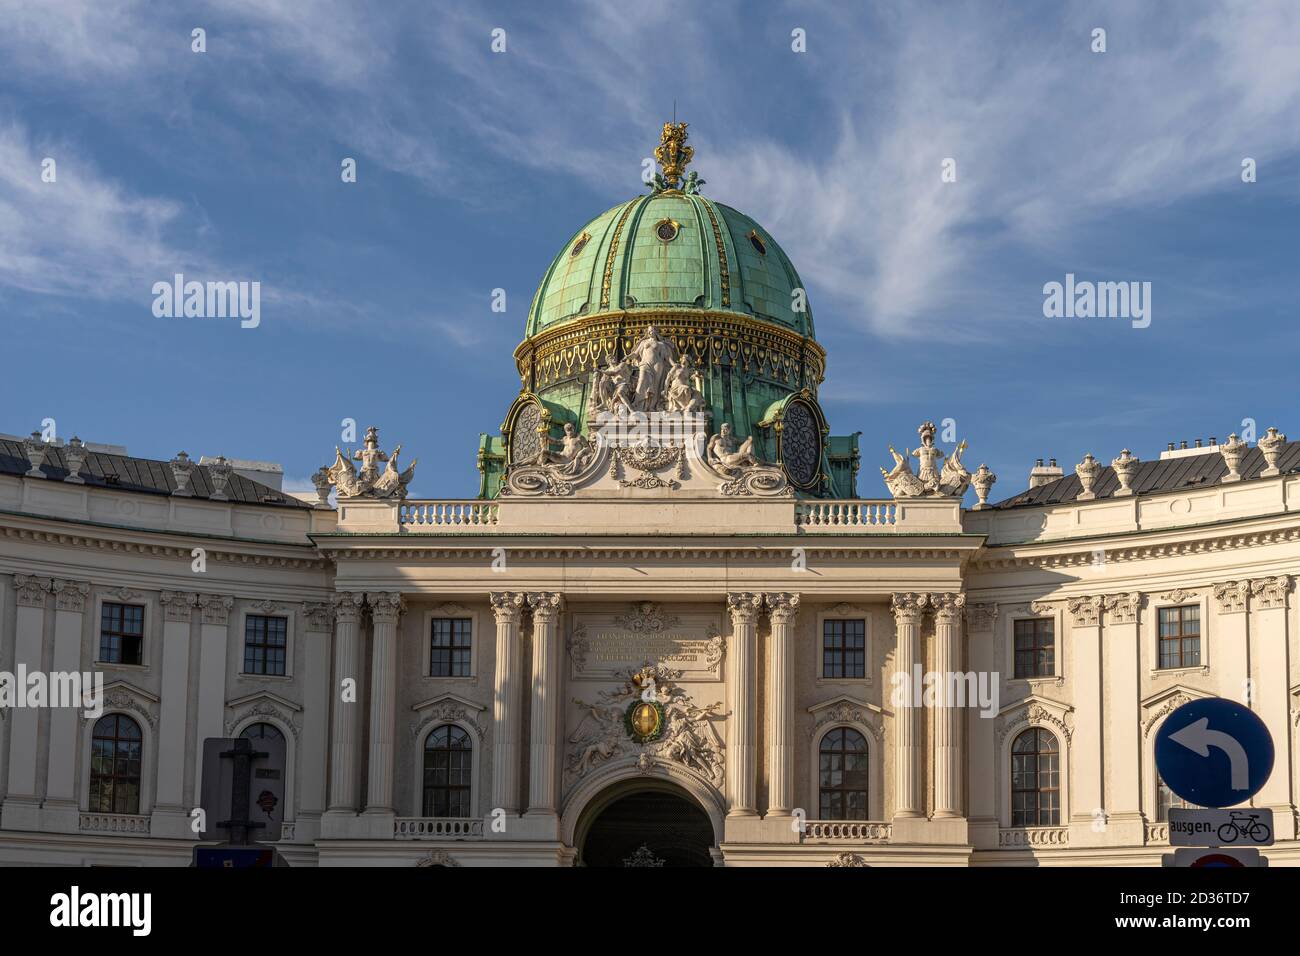 Michaelertrakt der Hofburg à Wien, Österreich, Europa | aile Saint-Michel, Vienne, Autriche, Europe Banque D'Images